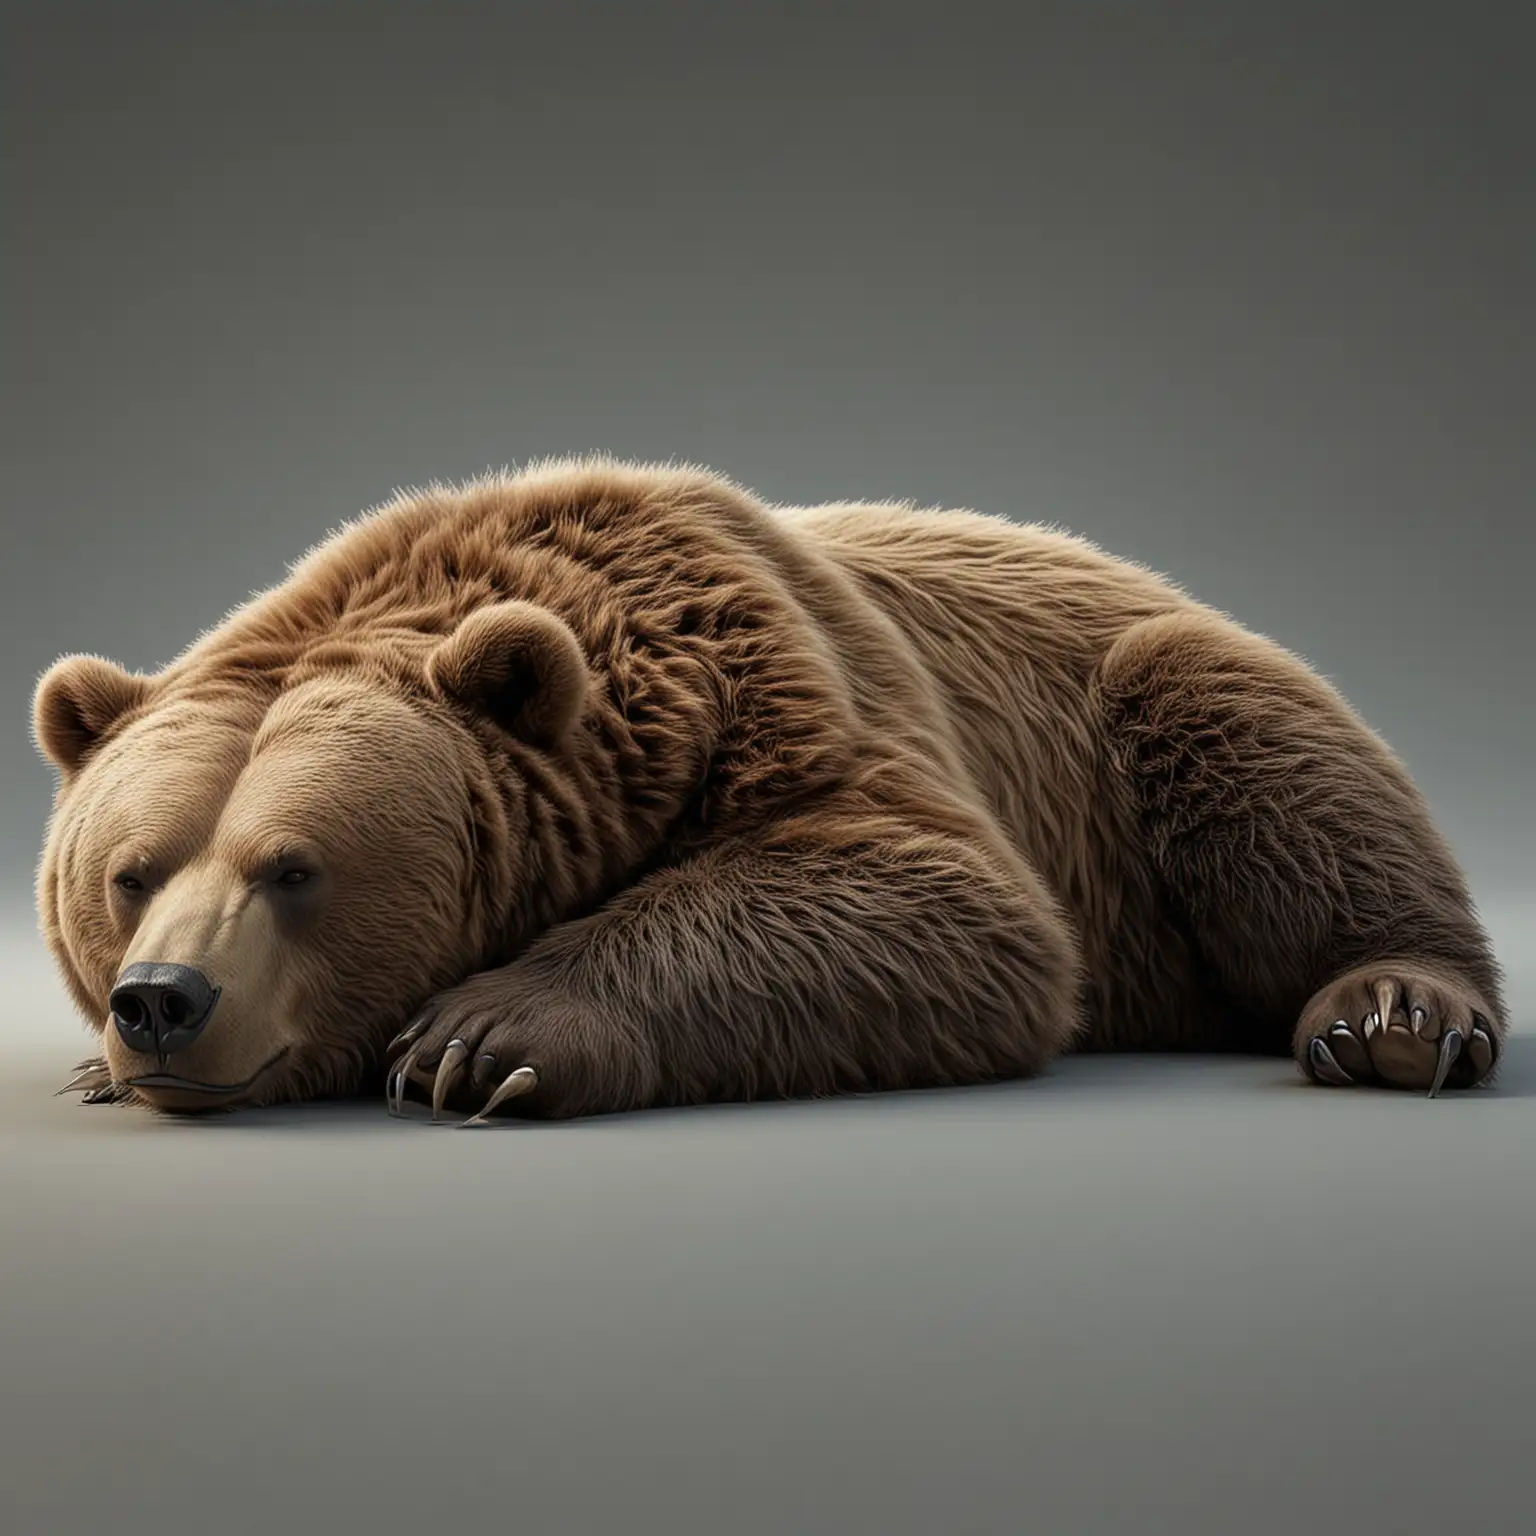 реалистичный мощный медведь лежит на боку и спит в полный рост видно все тело